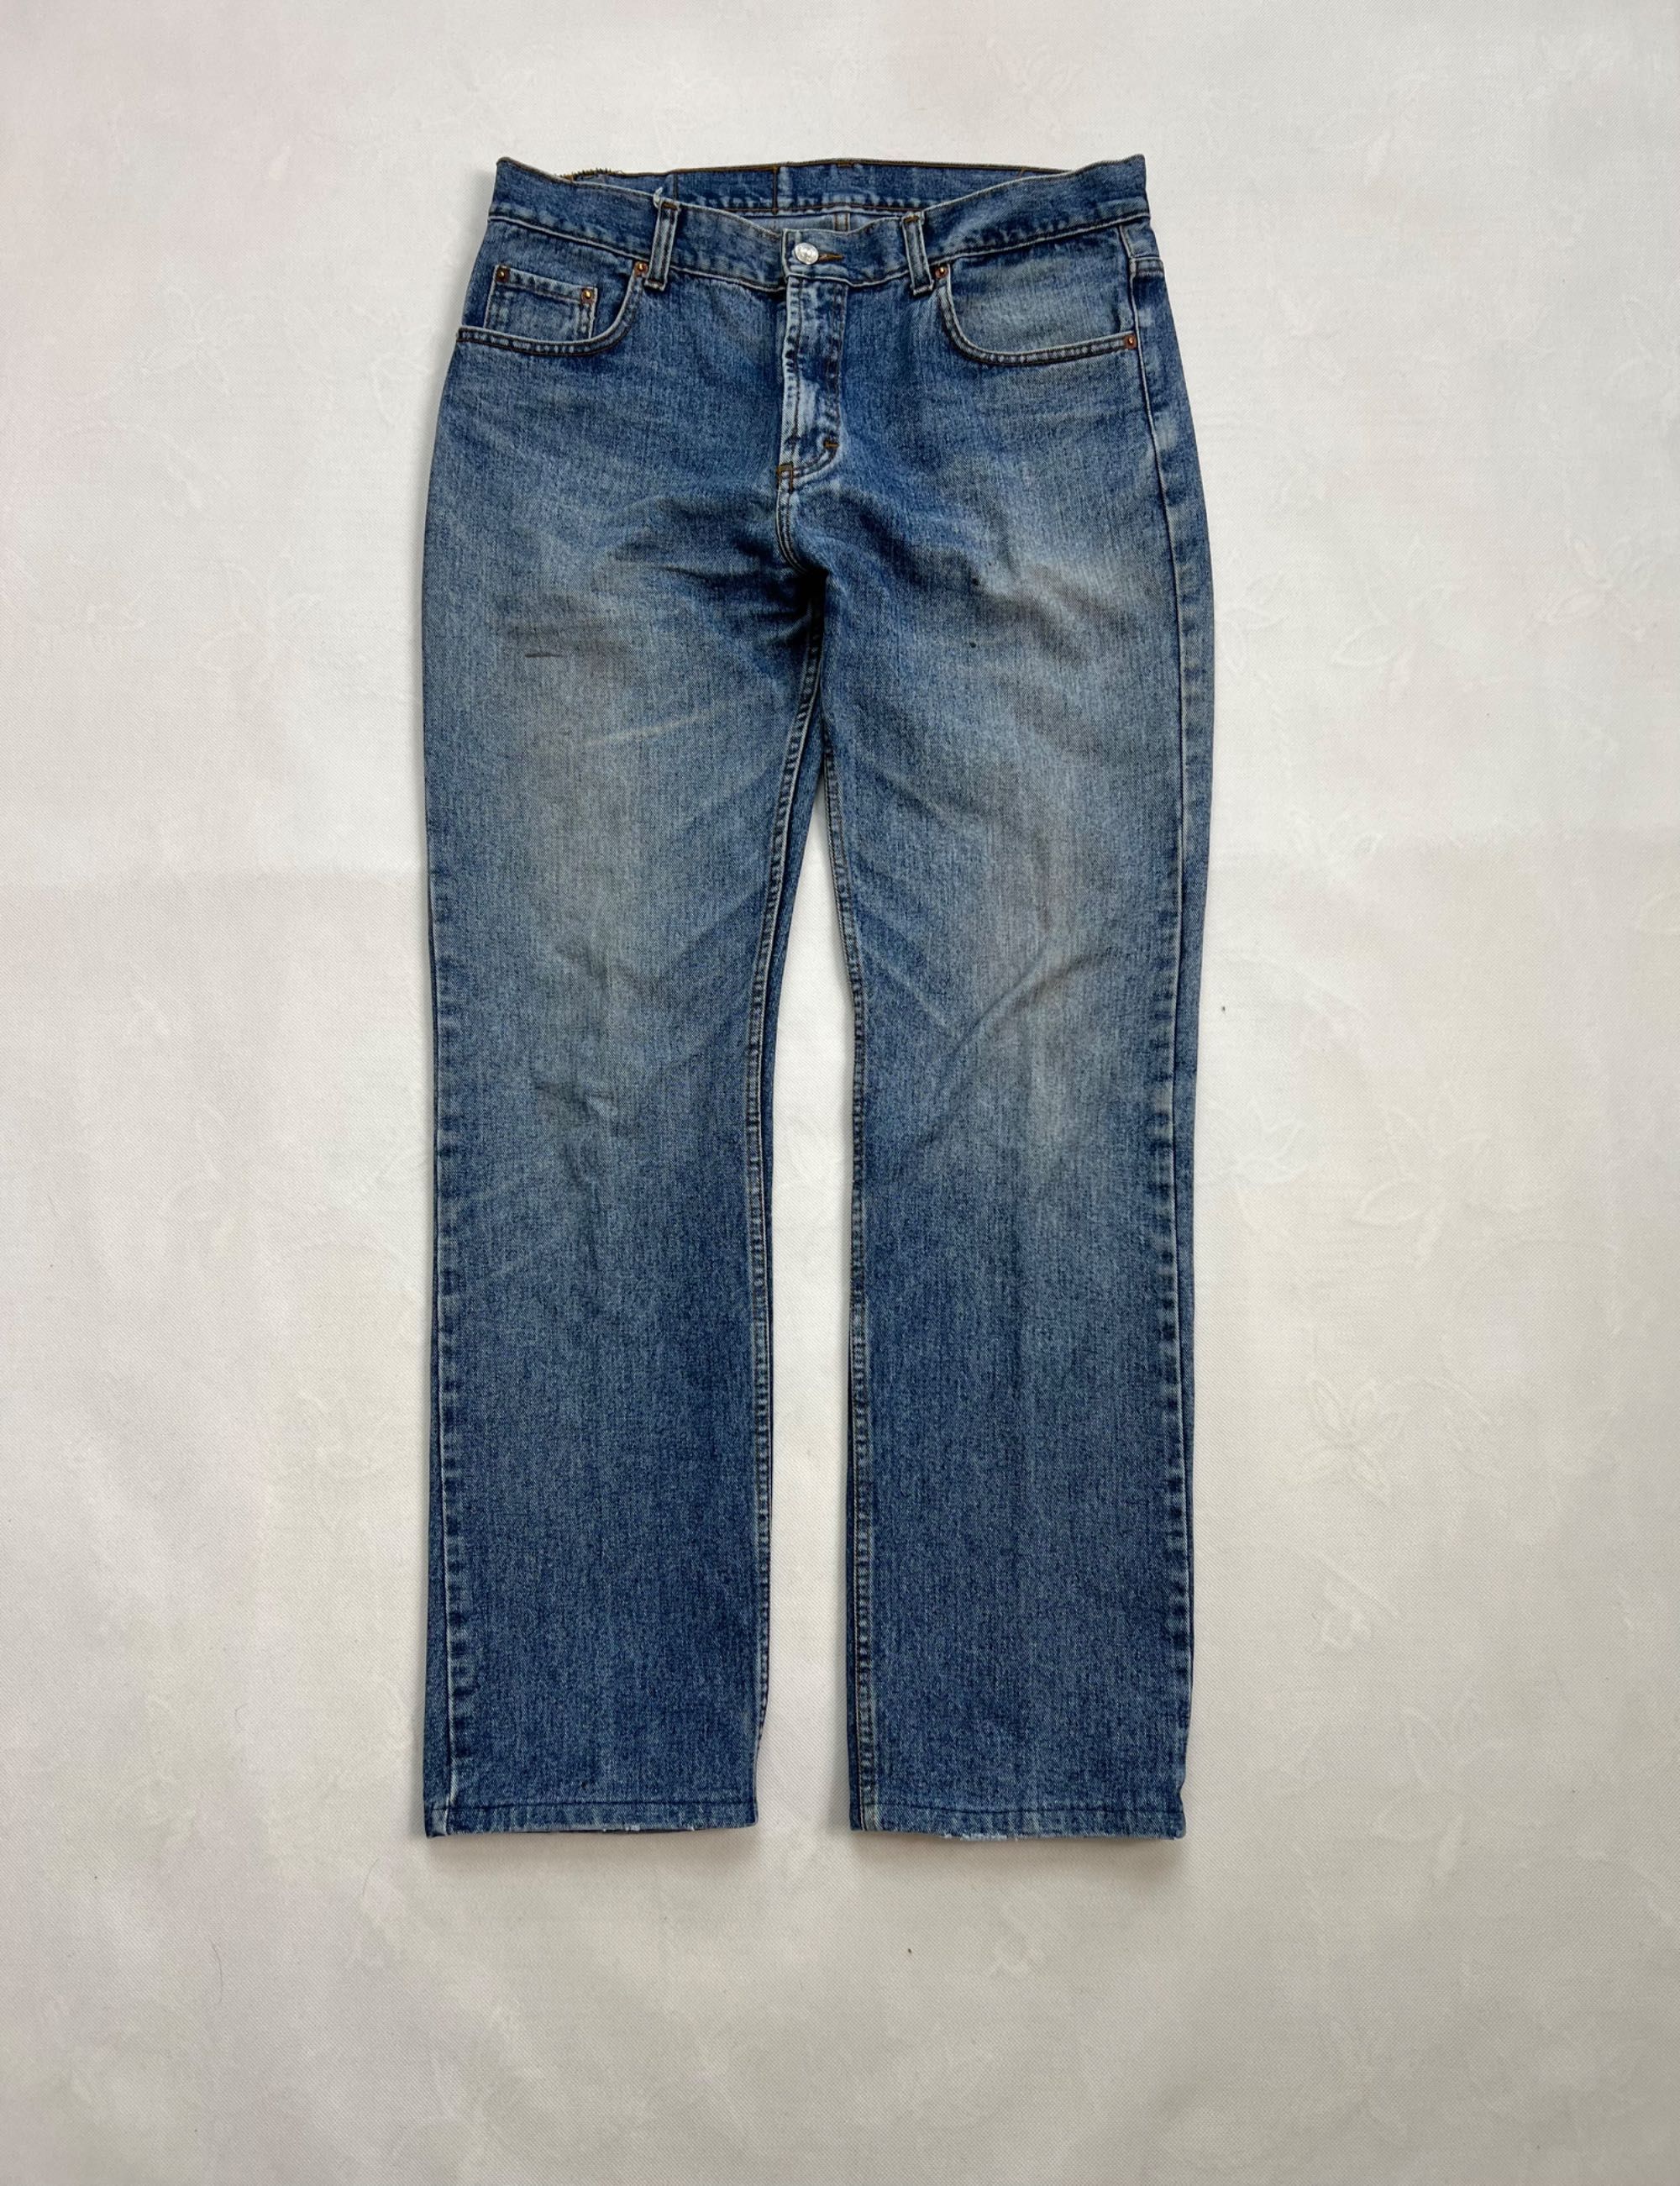 Spodnie Levi’s 501 blue vintage 90’s